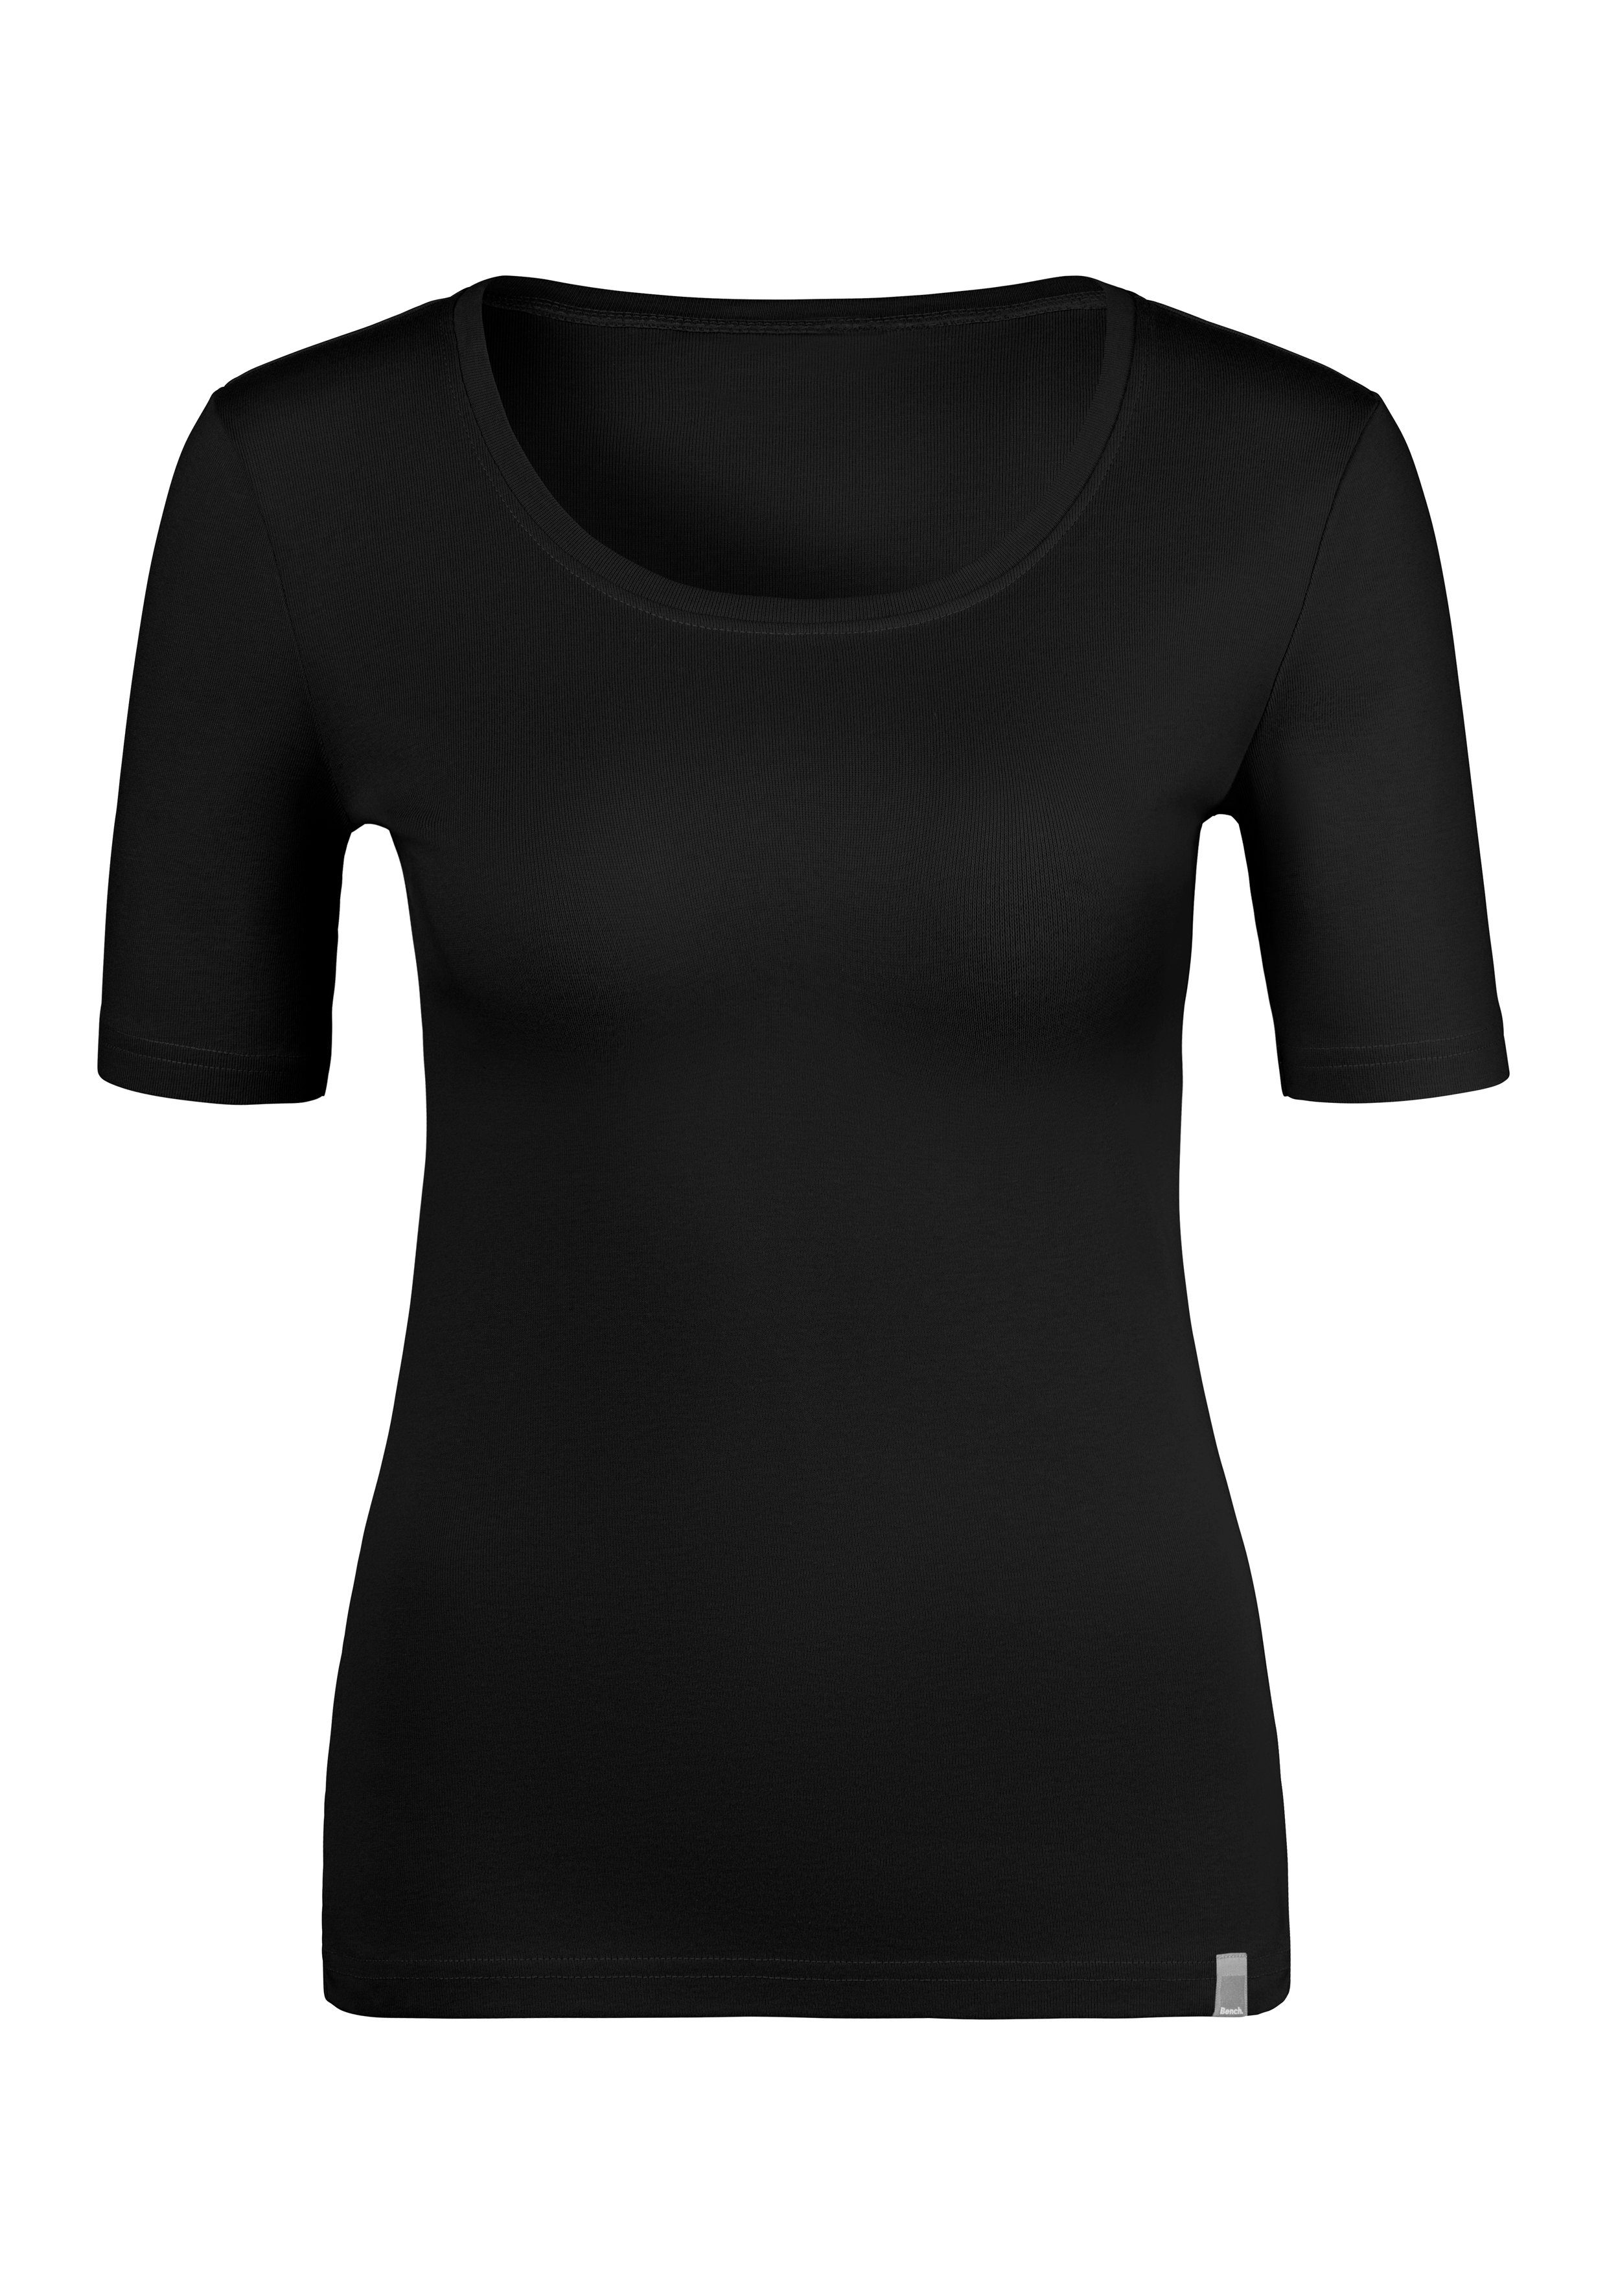 weicher T-Shirt schwarz (2er-Pack) rose, Bench. Unterziehshirt aus Feinripp-Qualität,